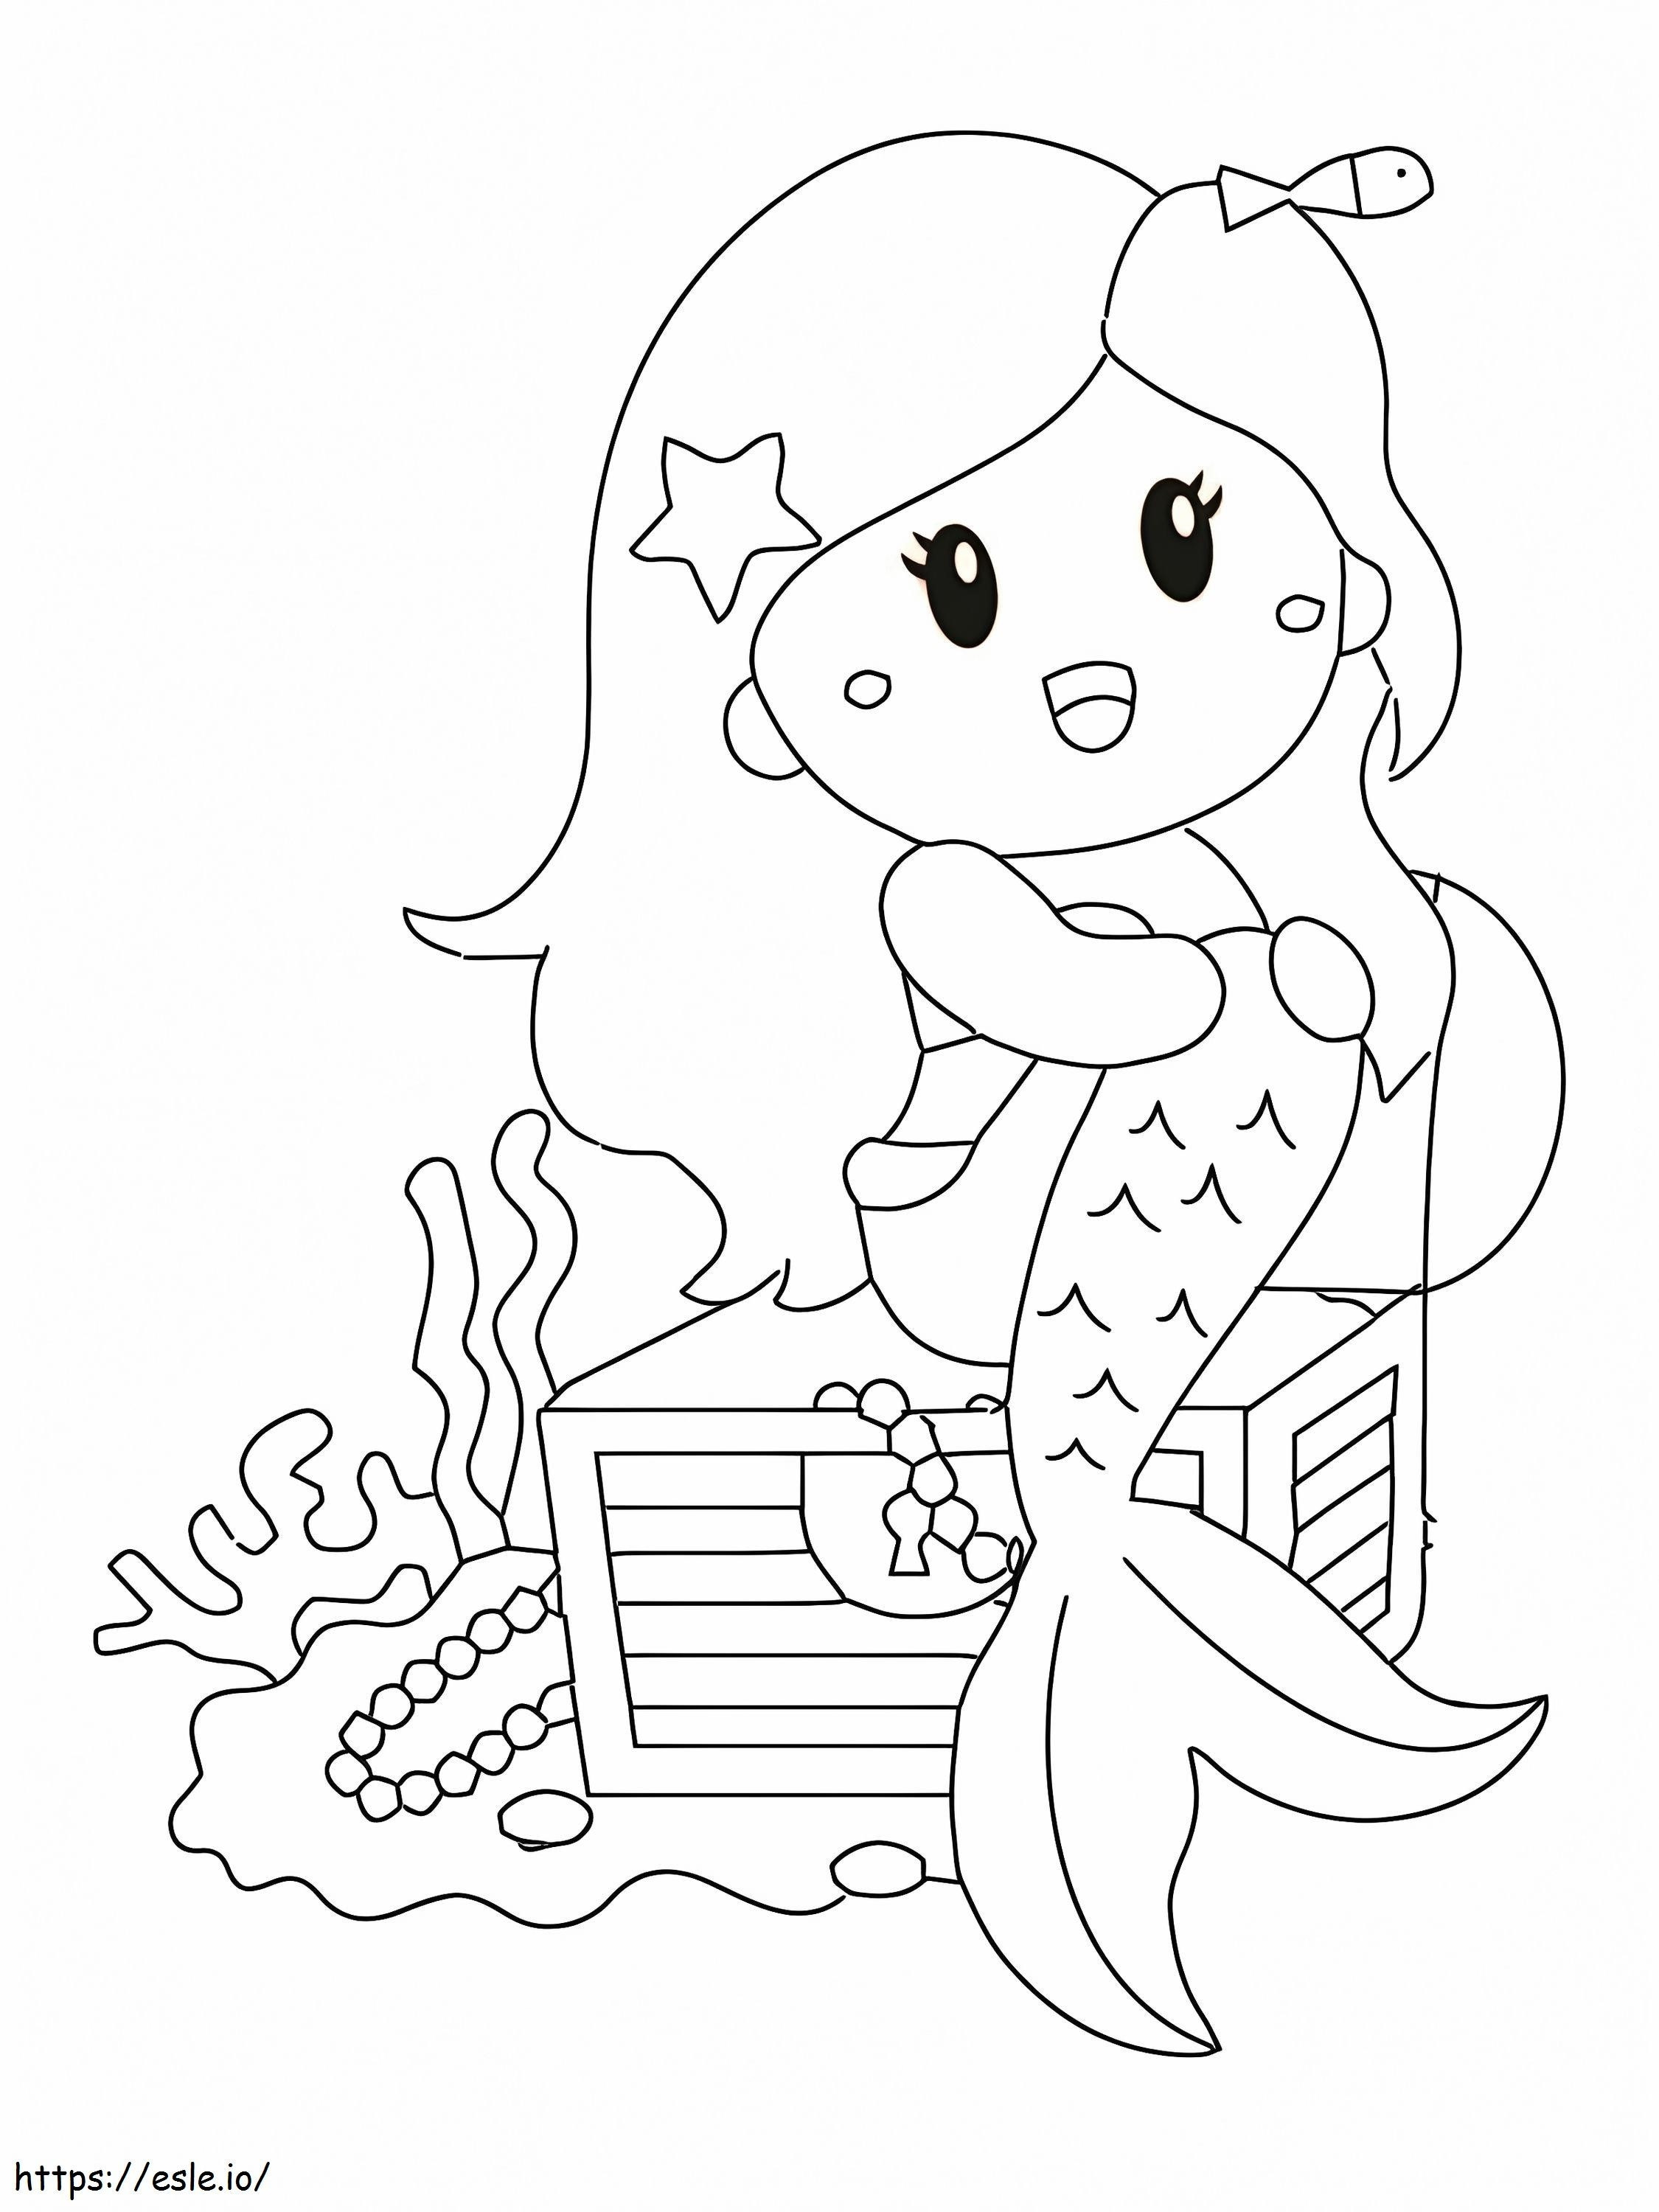 Meerjungfrau sitzt auf einem Schatz ausmalbilder